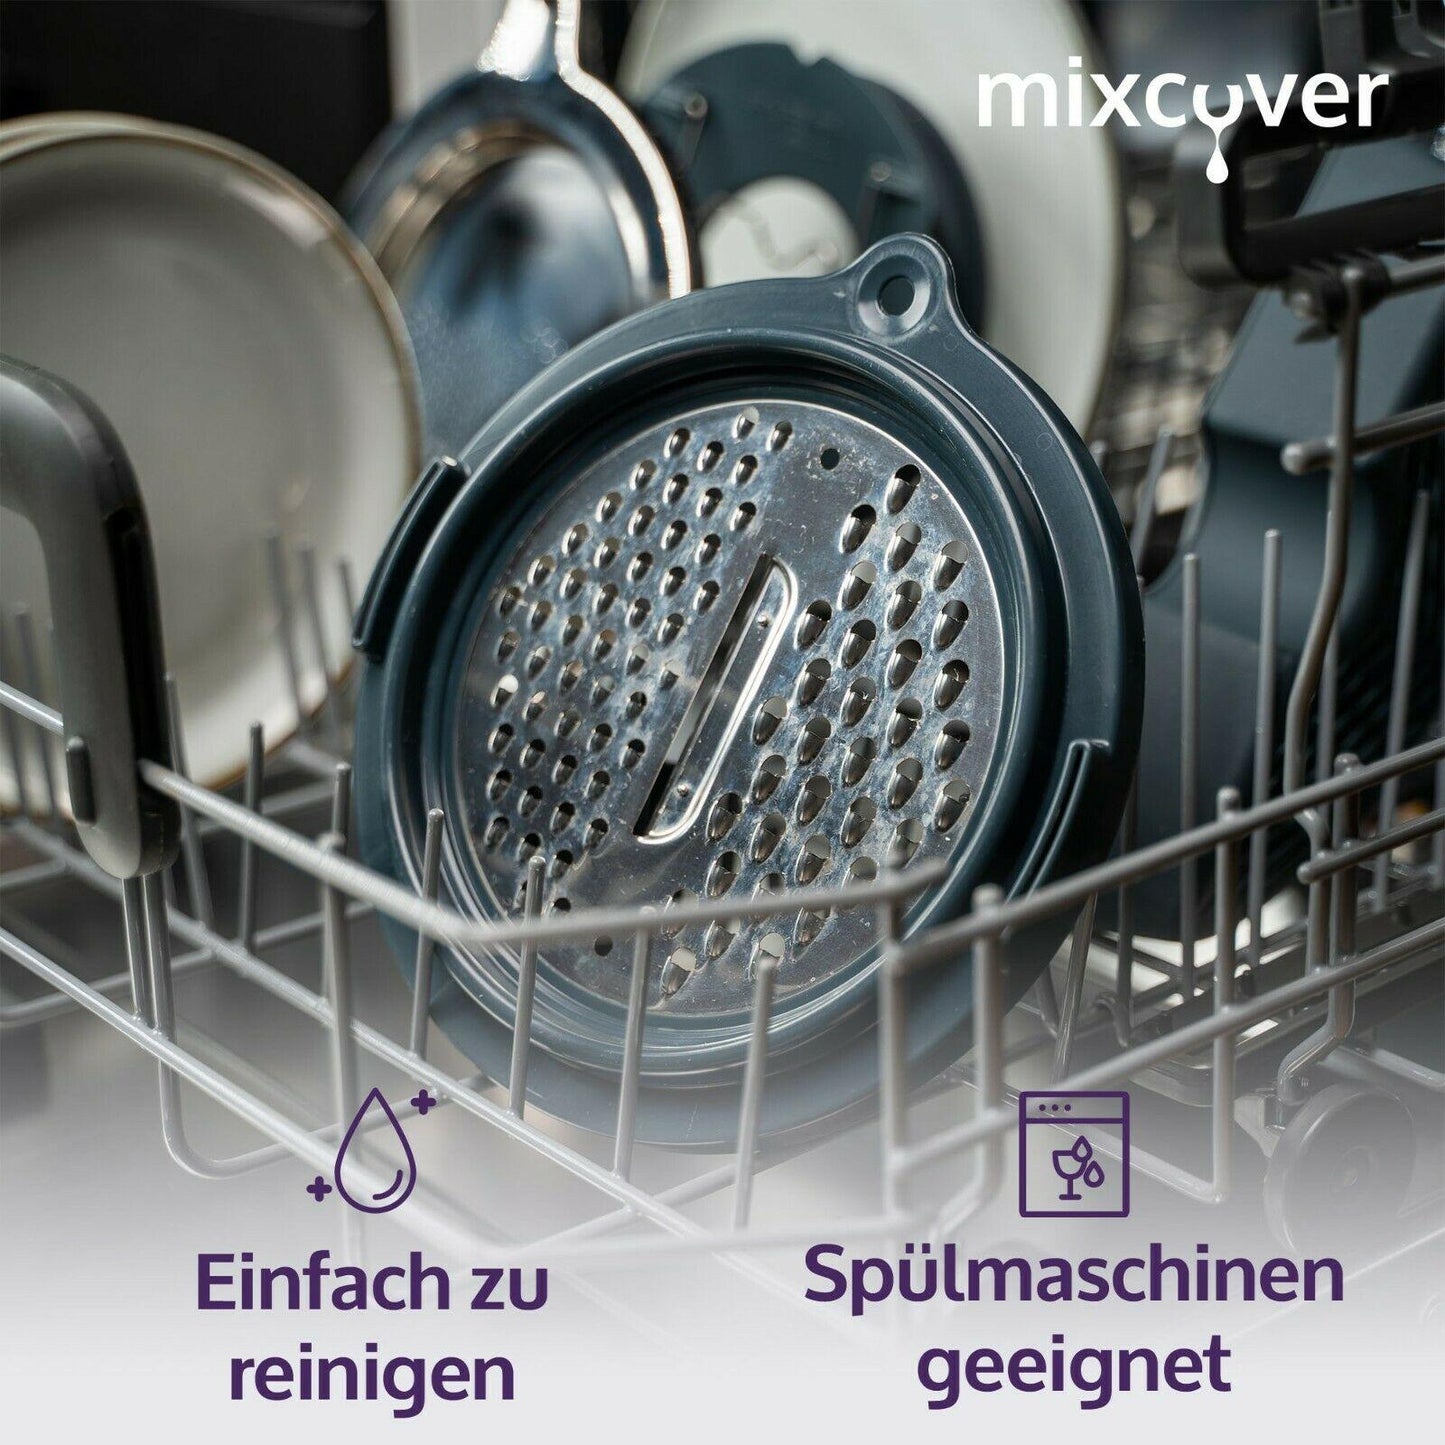 B-Ware: mixcover Gemüse, Obst und Käsereibe für den Thermomix TM6 und TM5, Thermomix - Mixcover - Mixcover